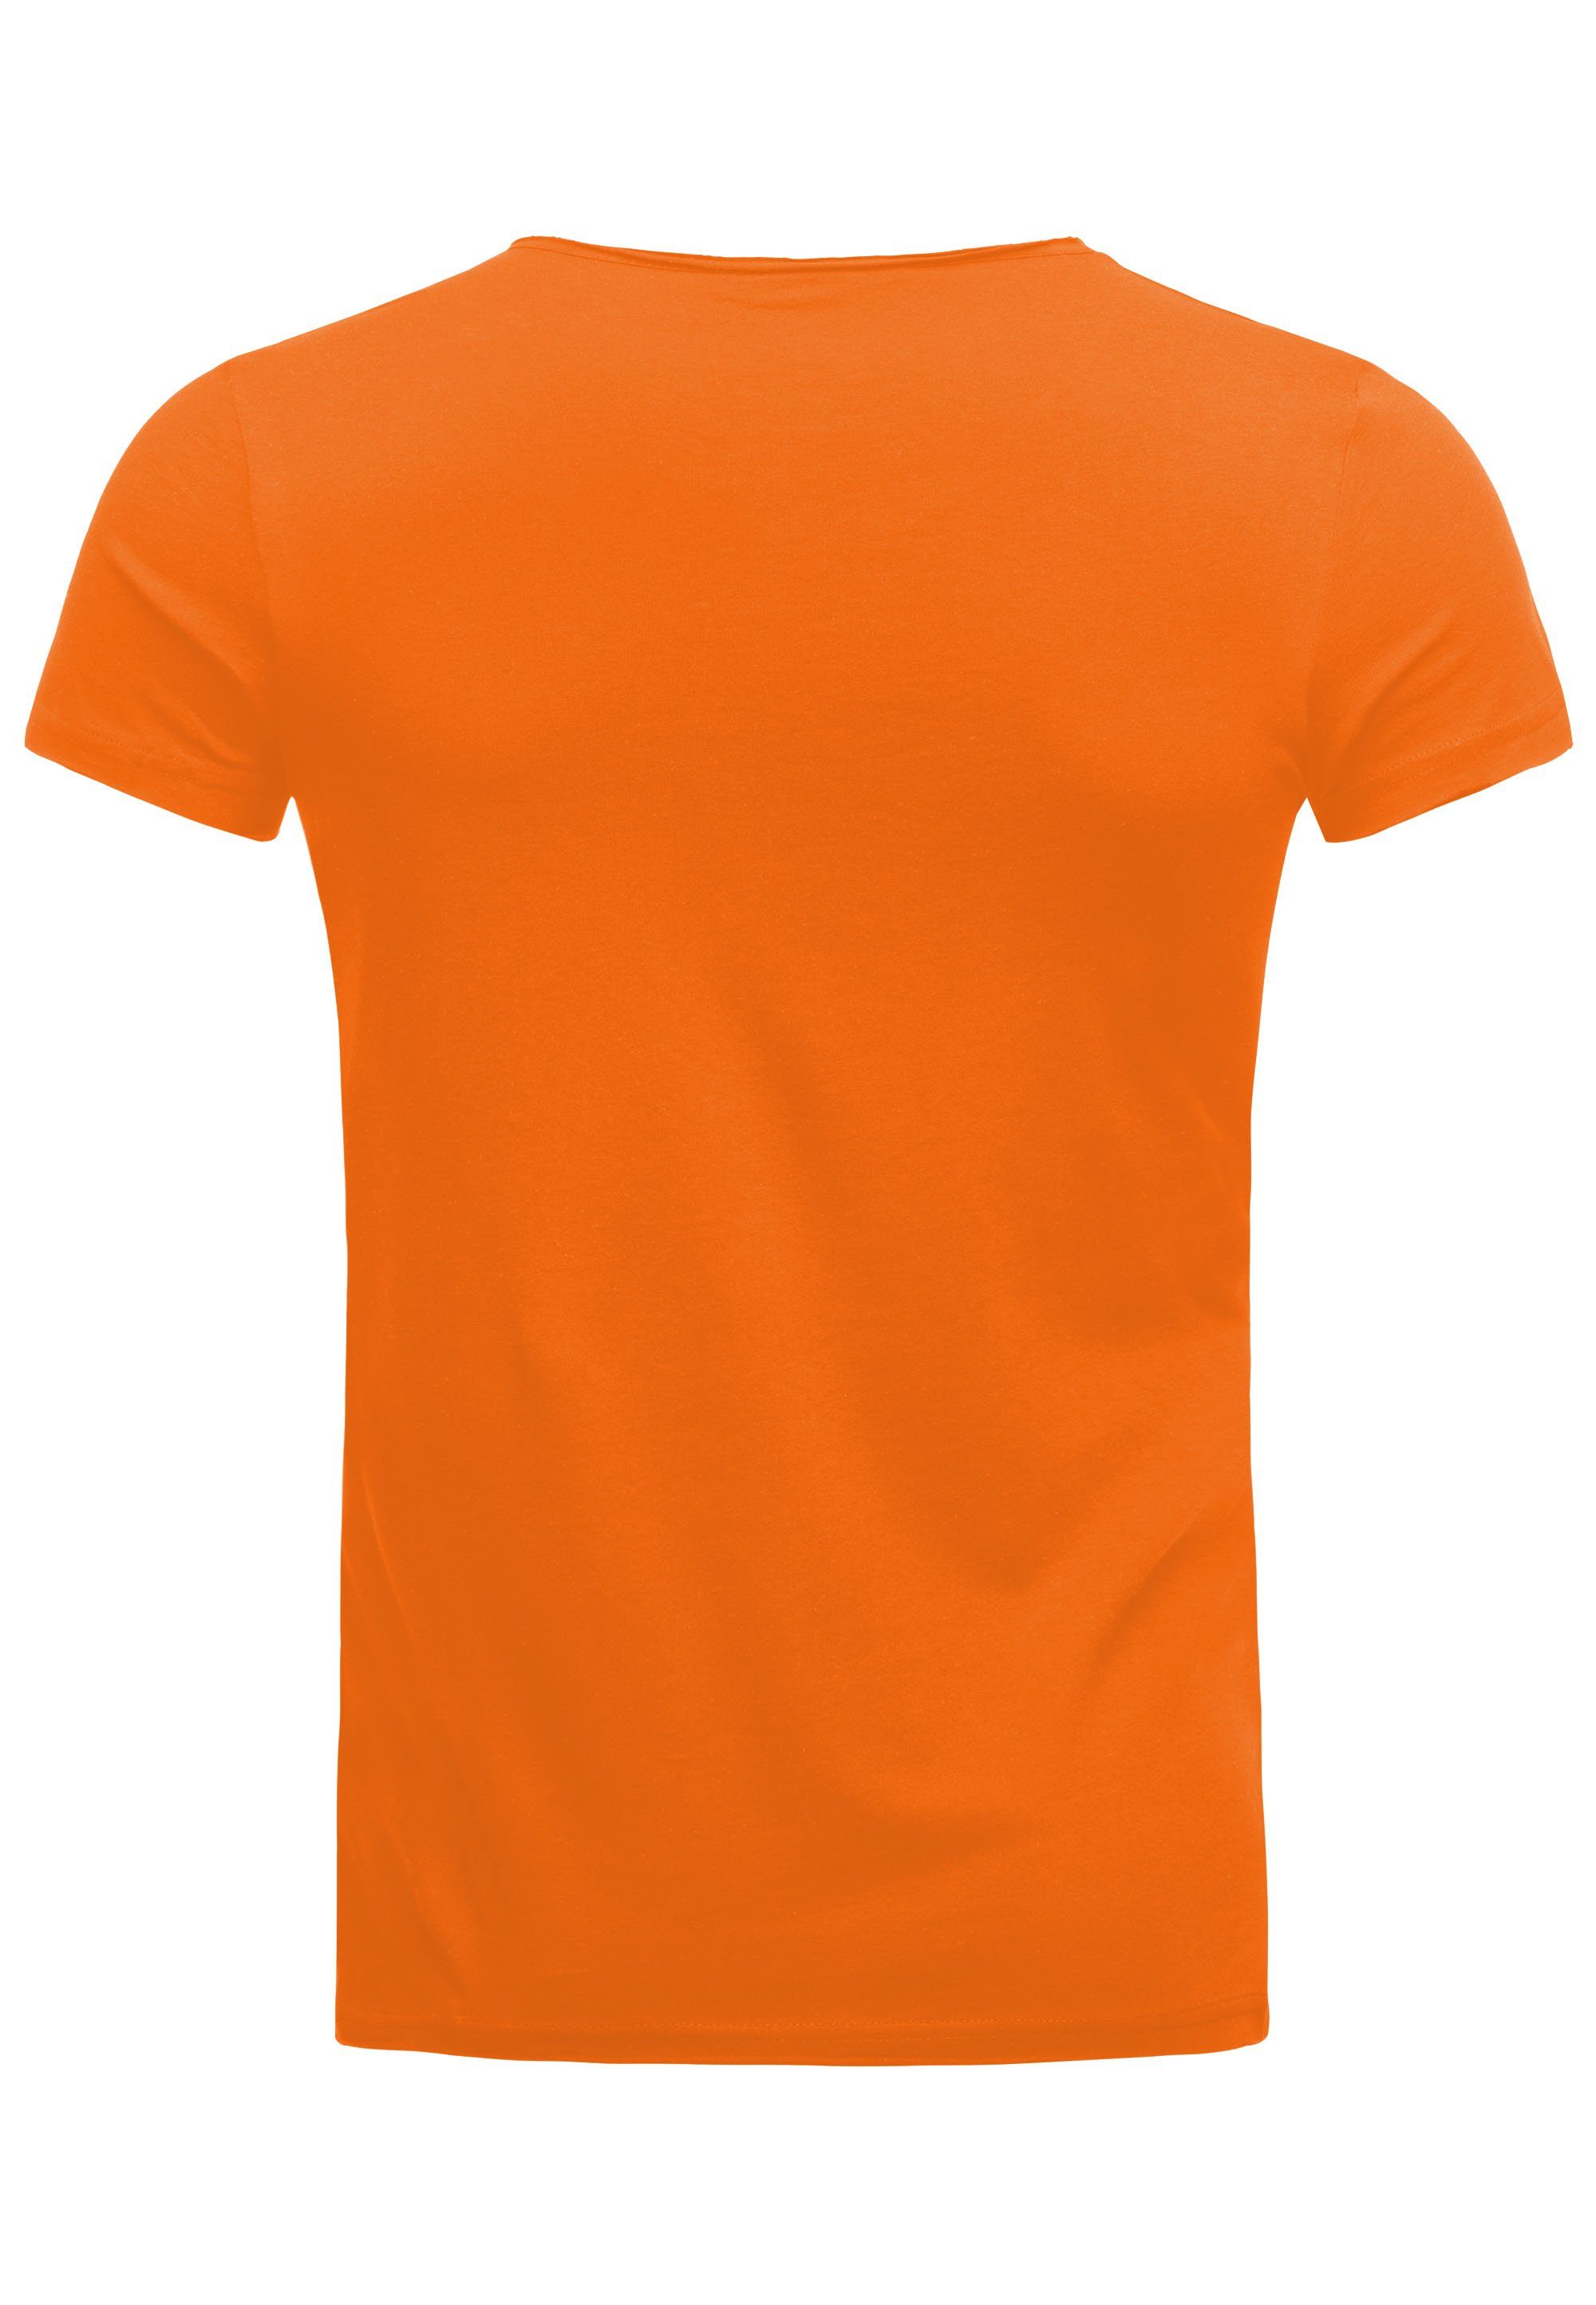 Print T-Shirt orange-weiß coolem mit RedBridge Pipe Manhattan Uncle